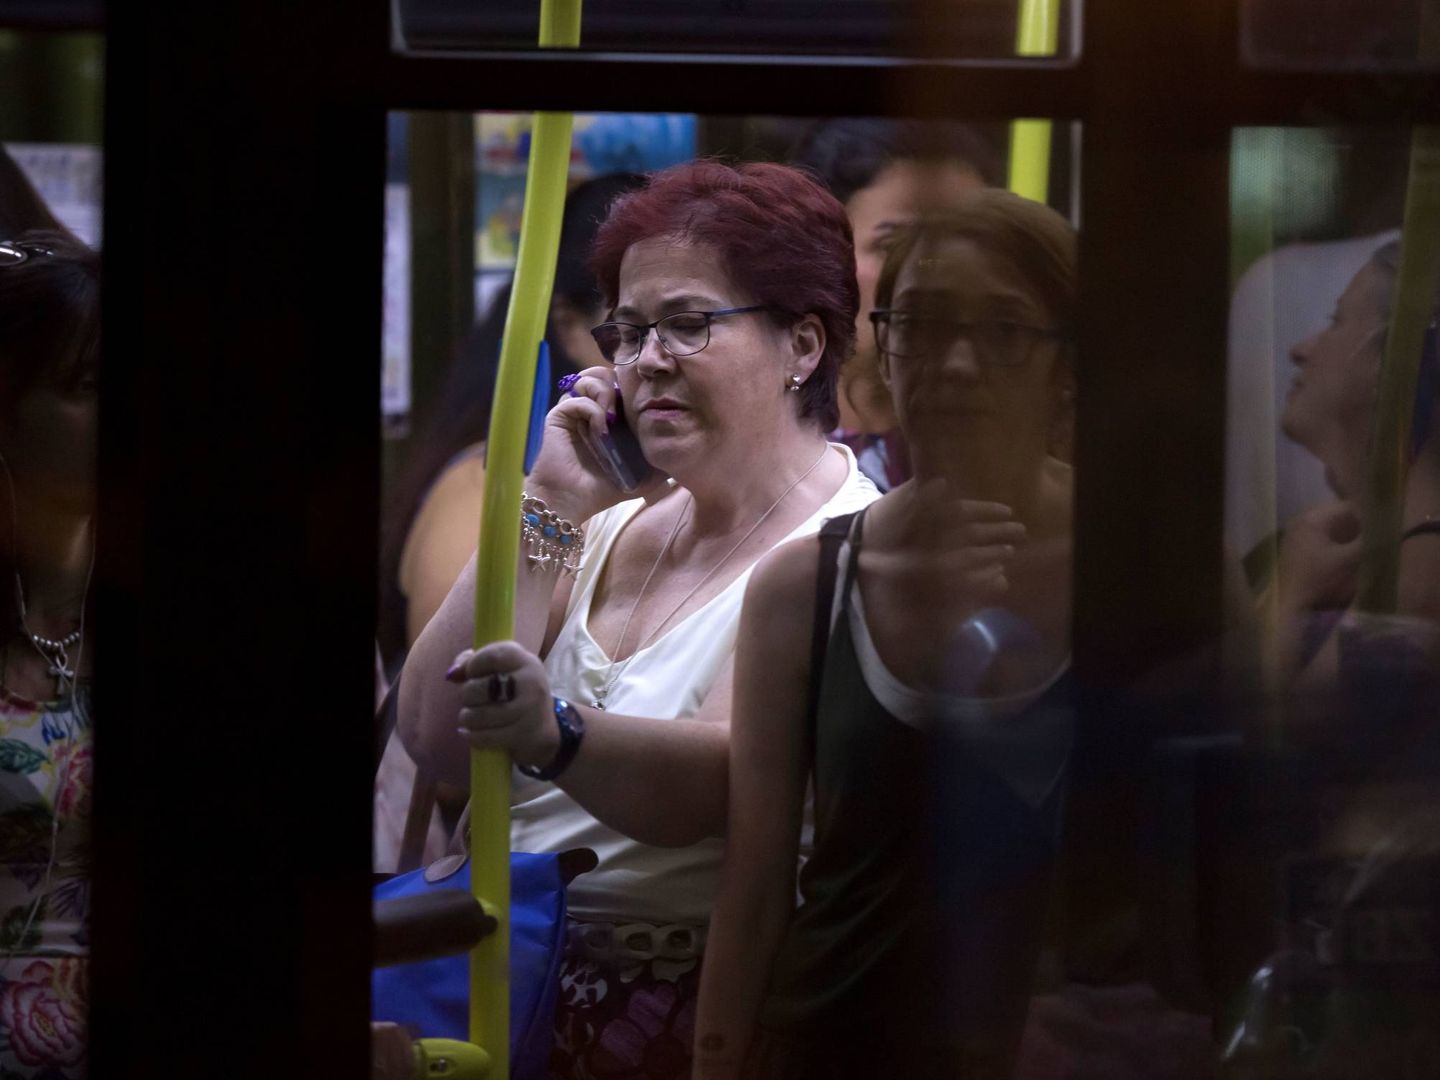 Una mujer habla por teléfono en un autobús madrileño. (Reuters/Juan Medina)